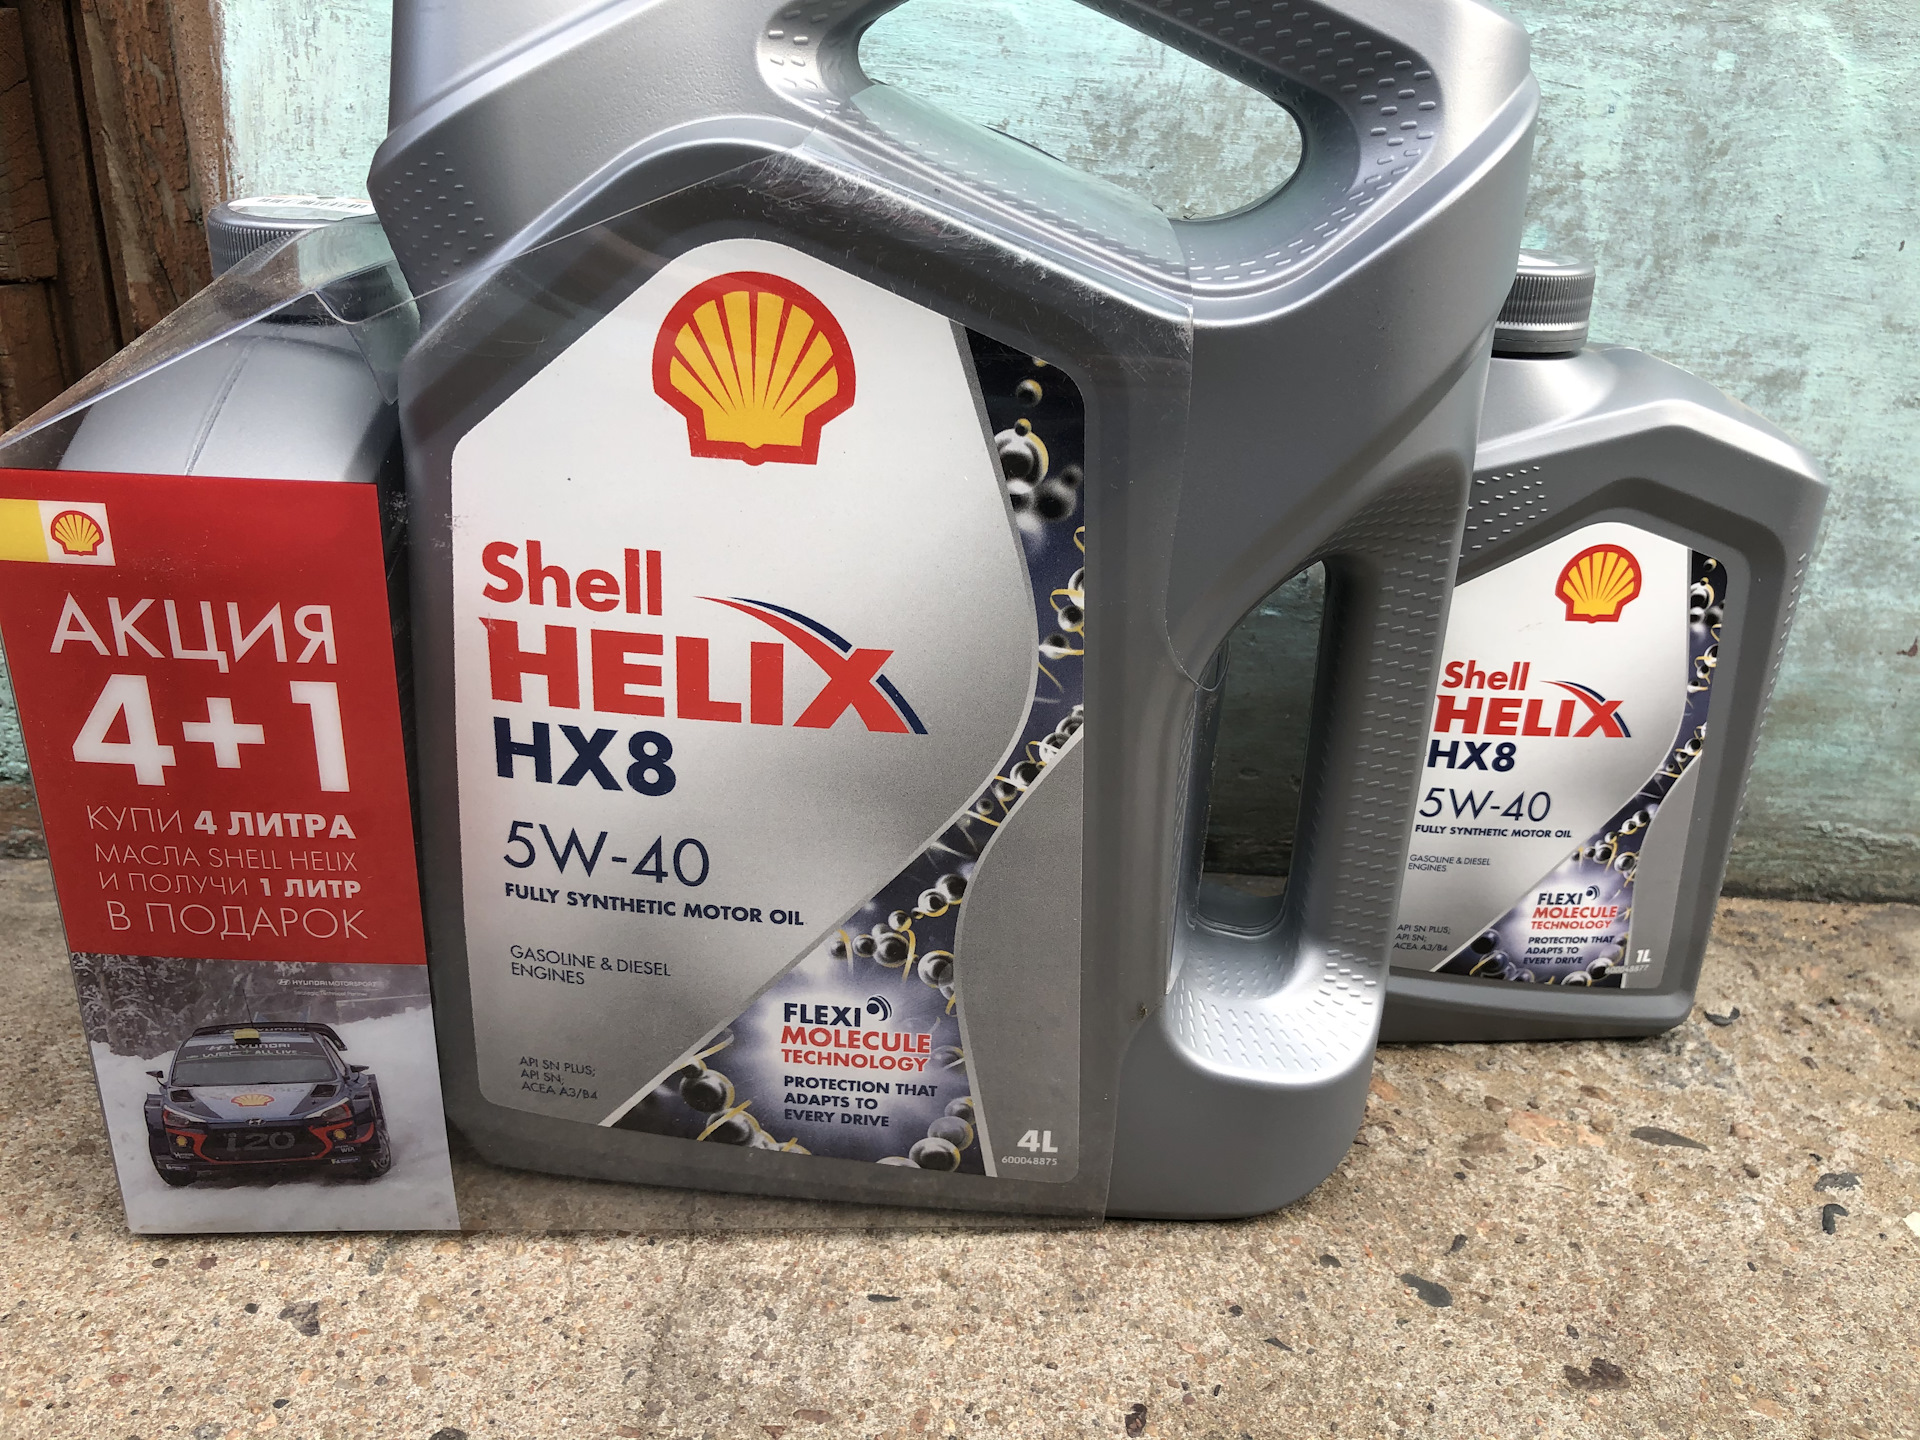 Моторное масло hx8 5w40. Shell hx8 5w40. Масло Shell hx8 5w40. Масло Шелл Хеликс hx8 5w40. Shell Helix hx5 5w-30.